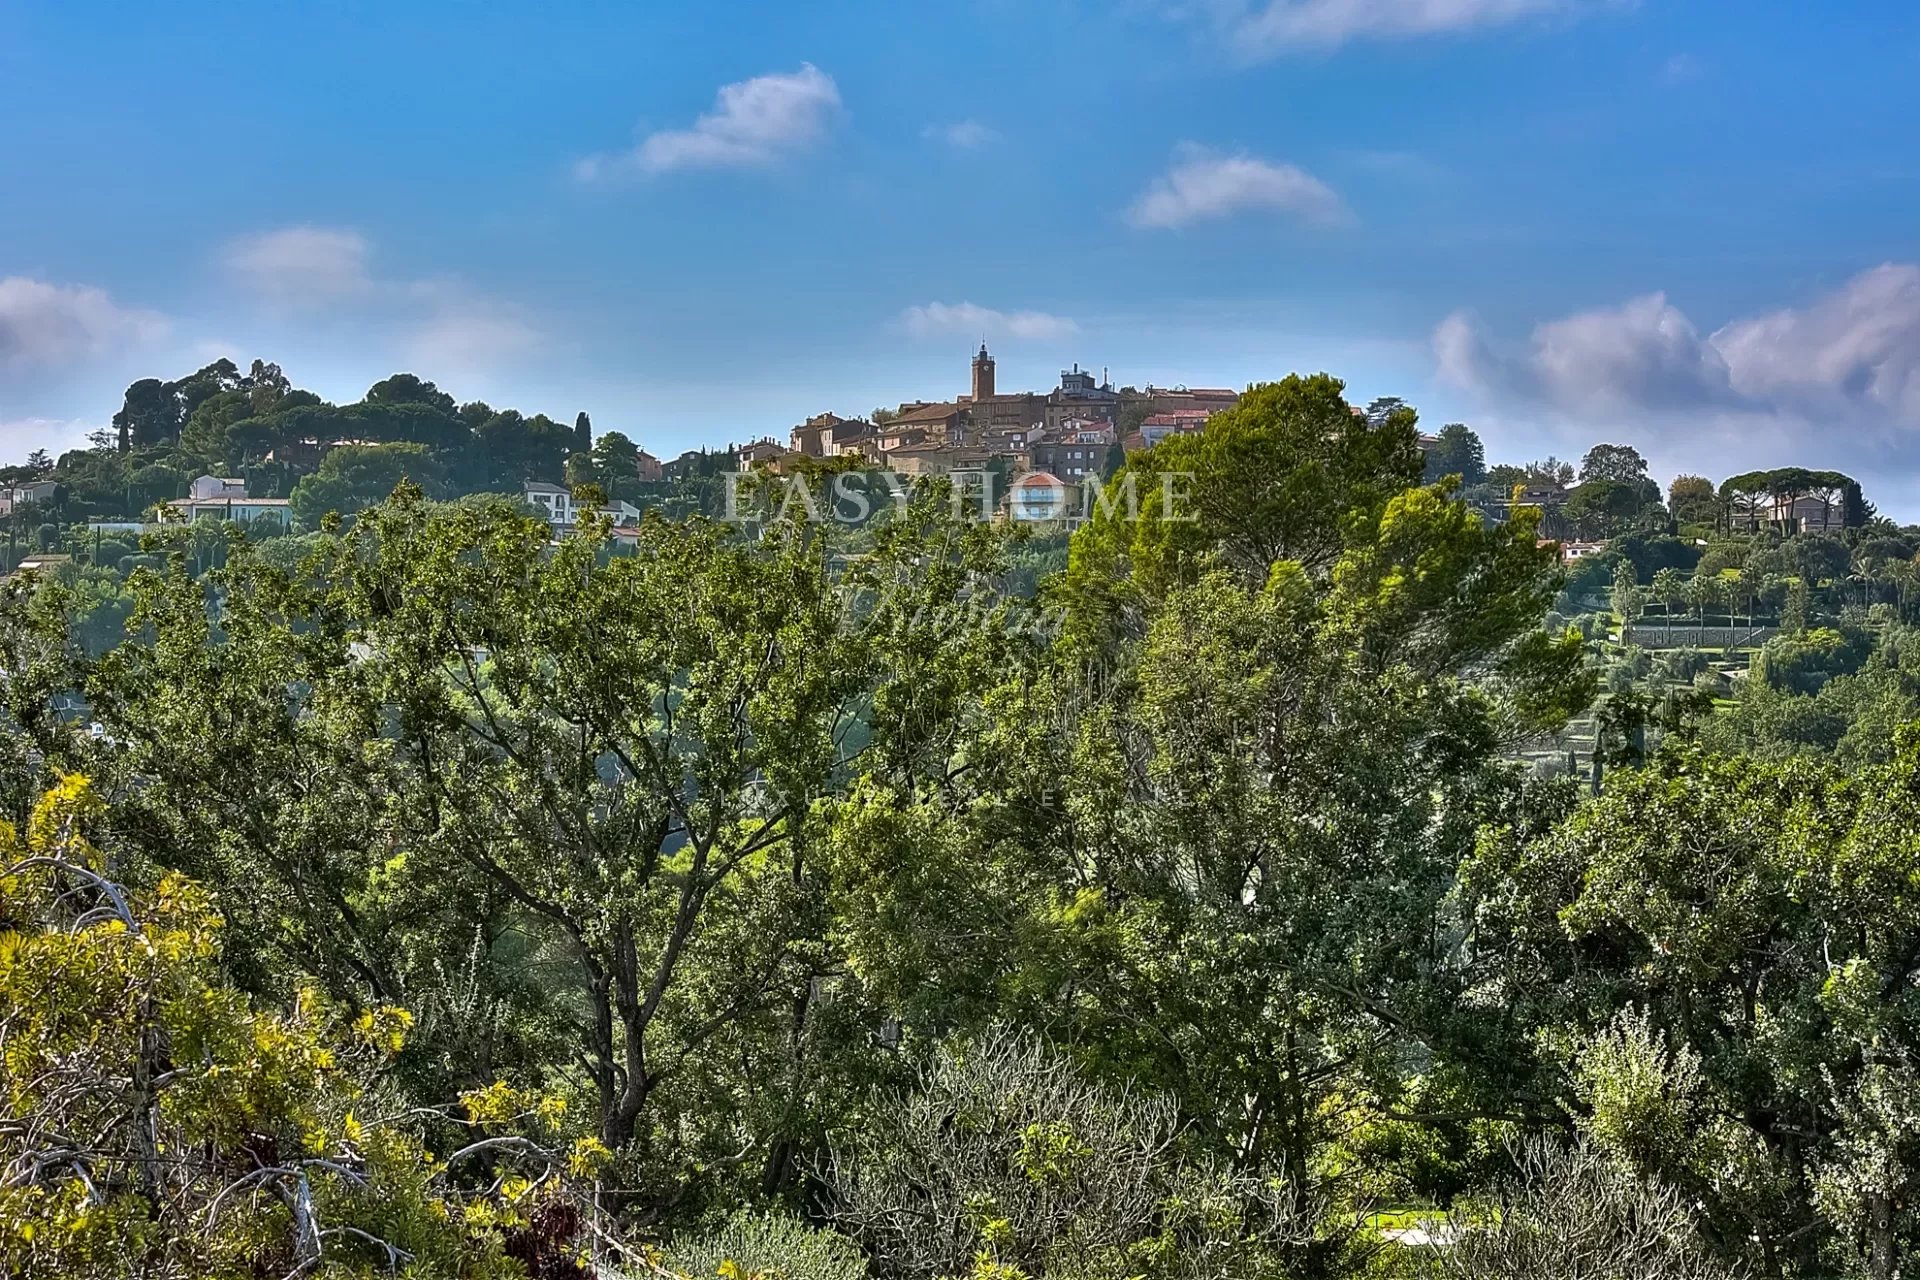 Achat/vente Villa Mougins avec vue village panoramique